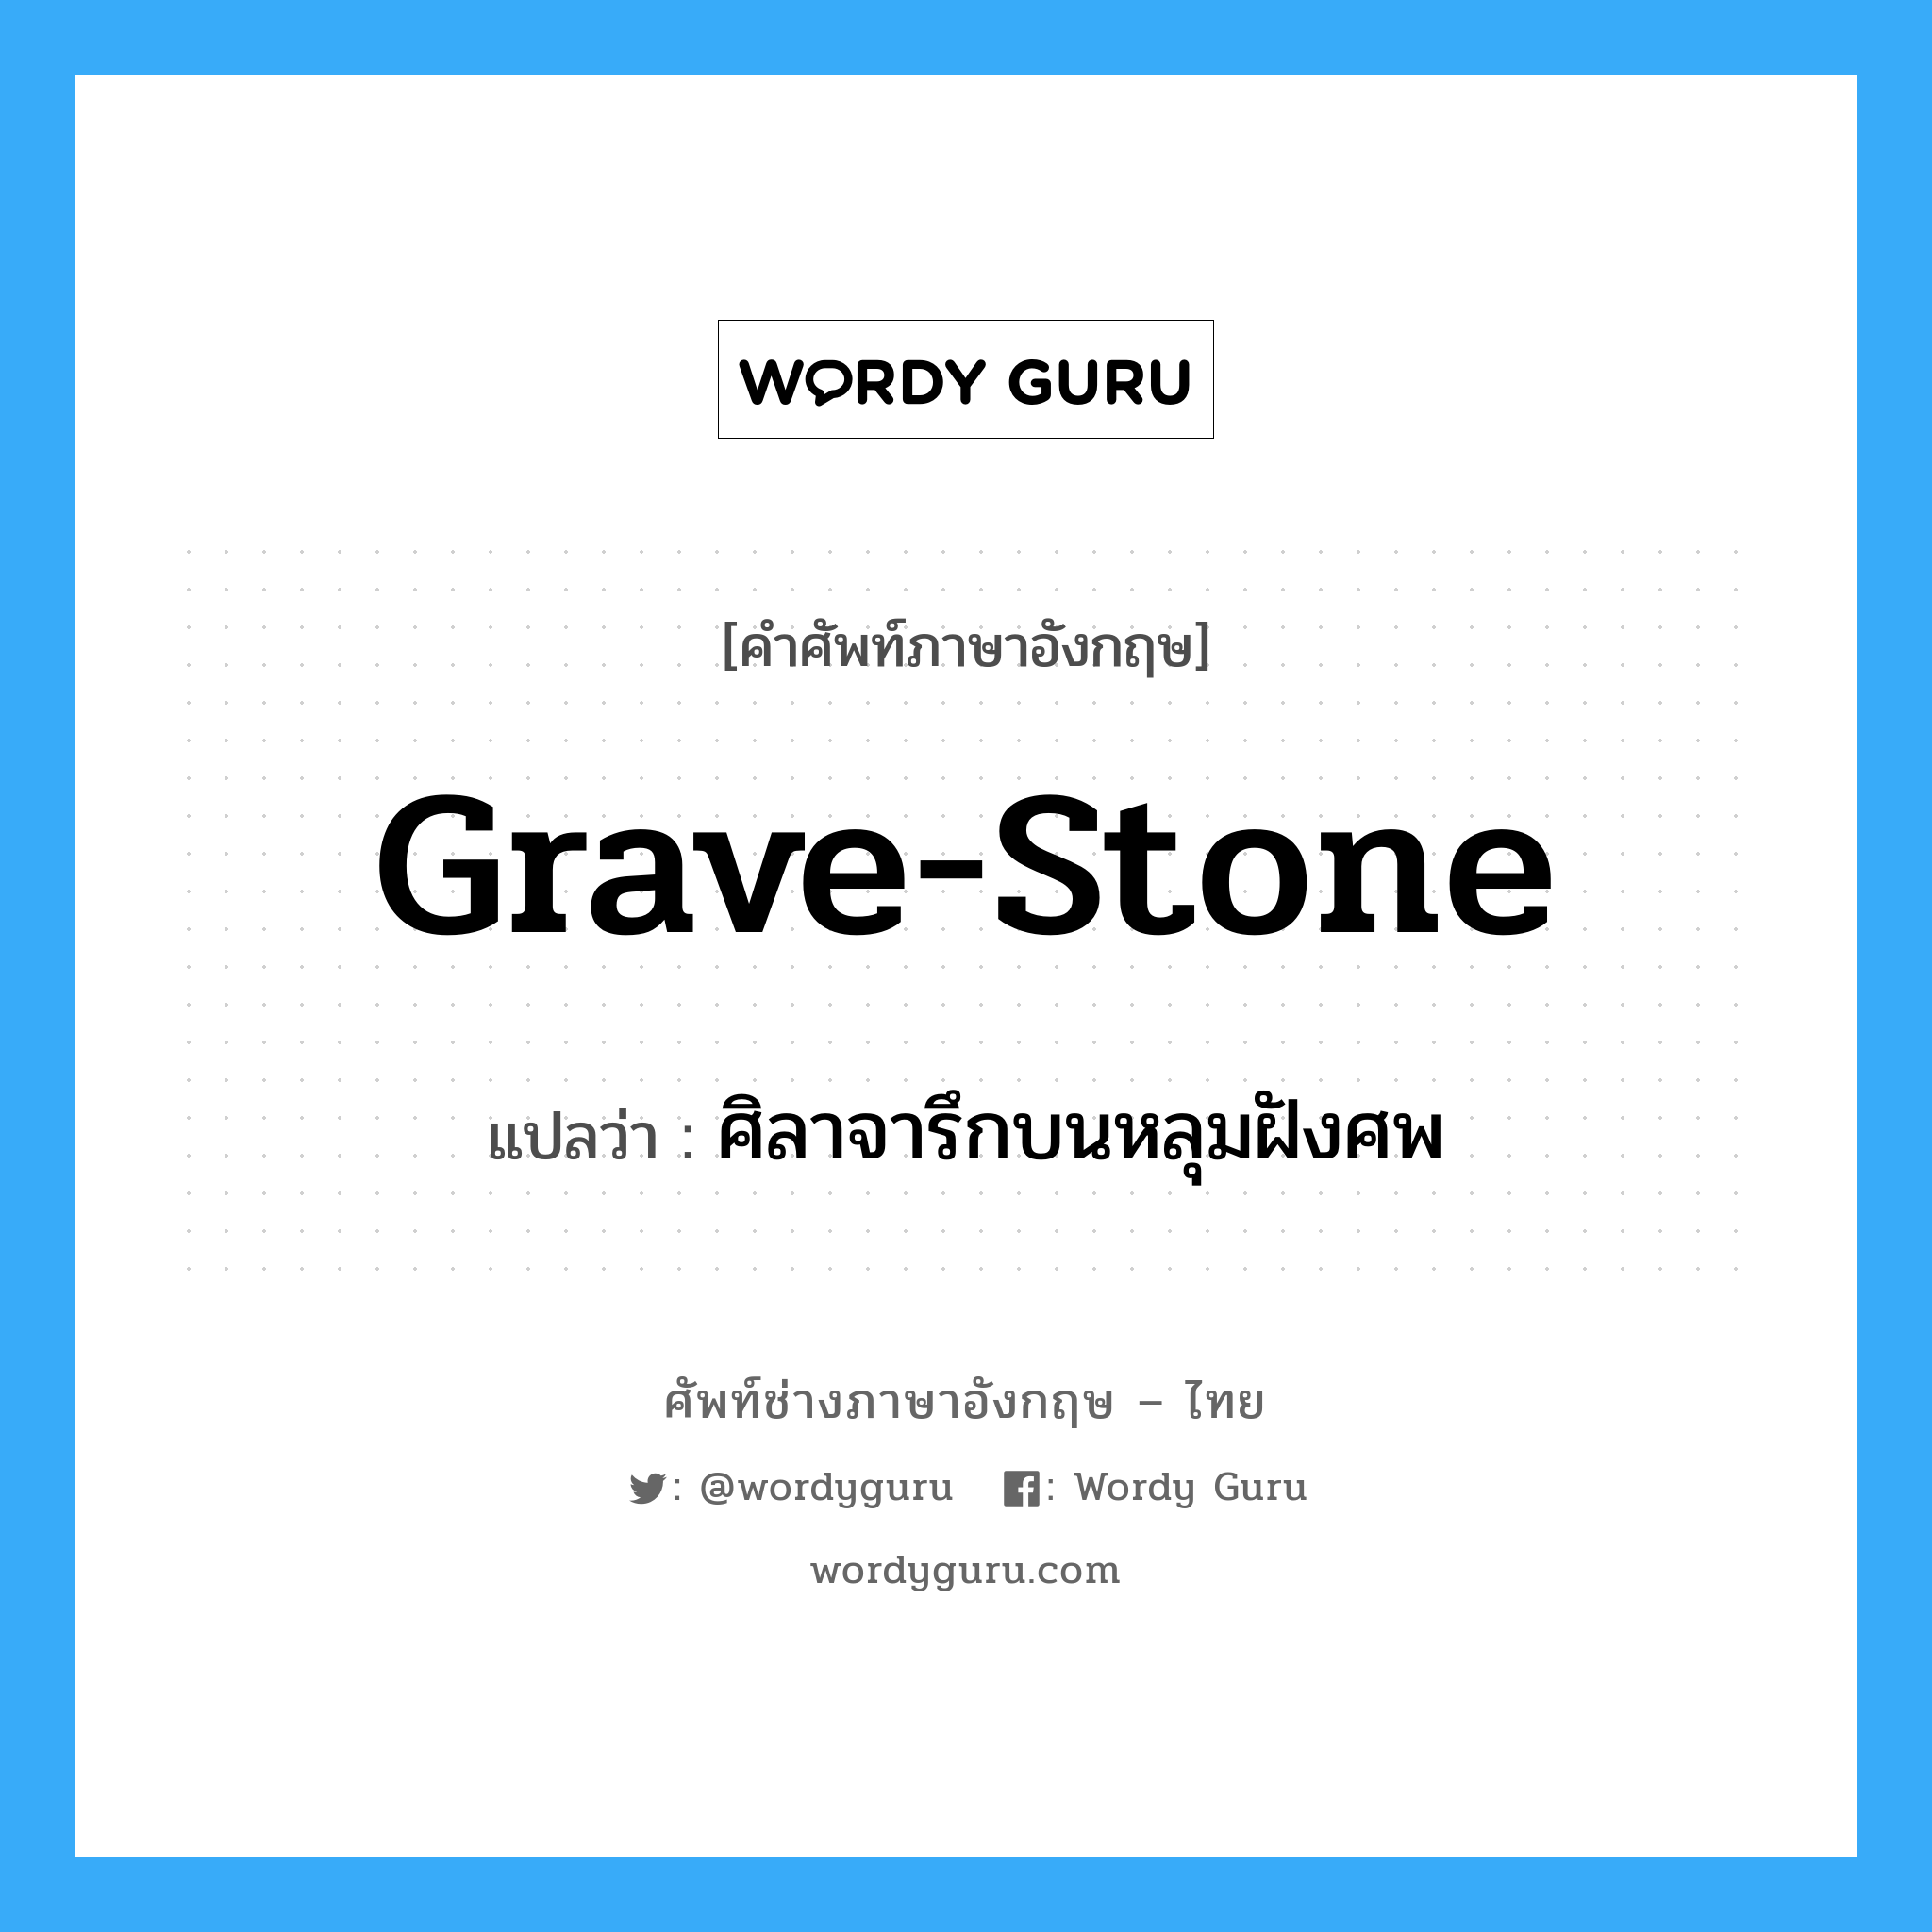 ศิลาจารึกบนหลุมฝังศพ ภาษาอังกฤษ?, คำศัพท์ช่างภาษาอังกฤษ - ไทย ศิลาจารึกบนหลุมฝังศพ คำศัพท์ภาษาอังกฤษ ศิลาจารึกบนหลุมฝังศพ แปลว่า grave-stone